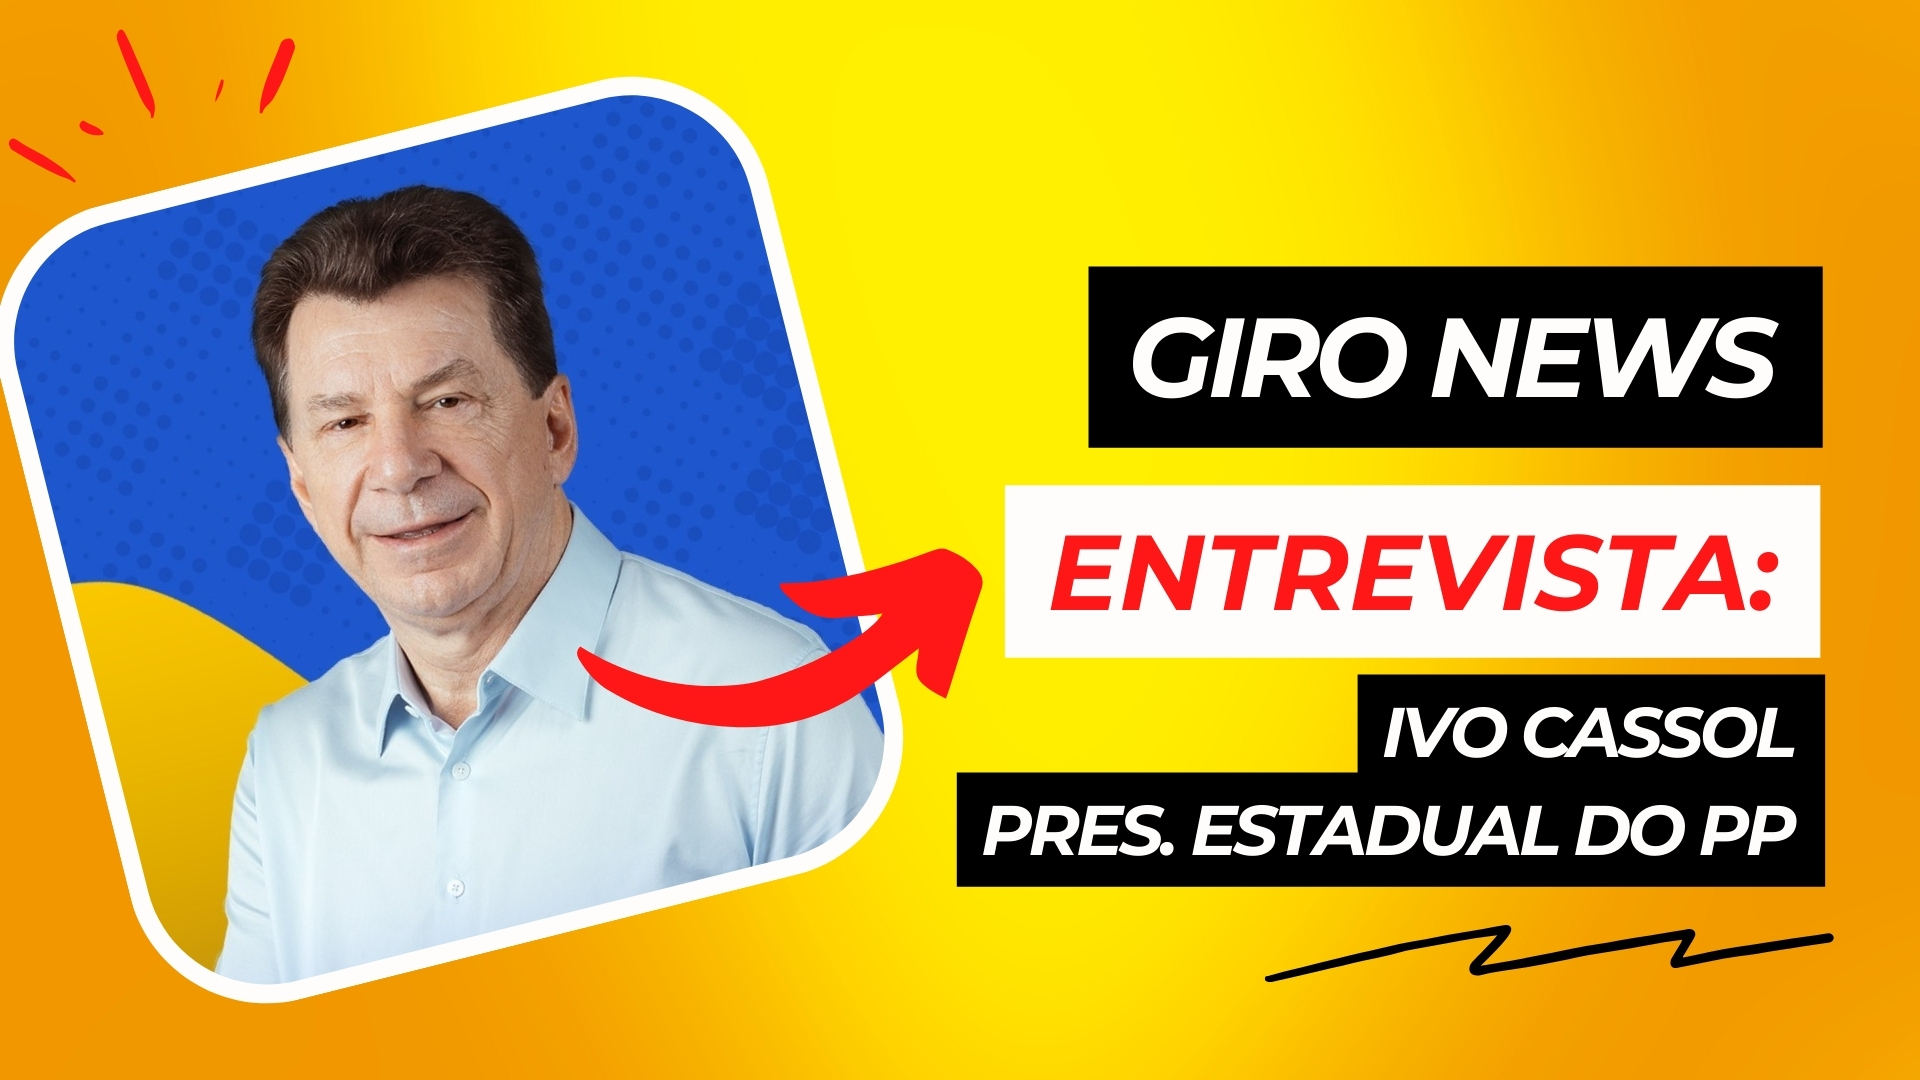 Programa Giro News entrevista: Ivo Cassol - pres. estadual do PP - News Rondônia